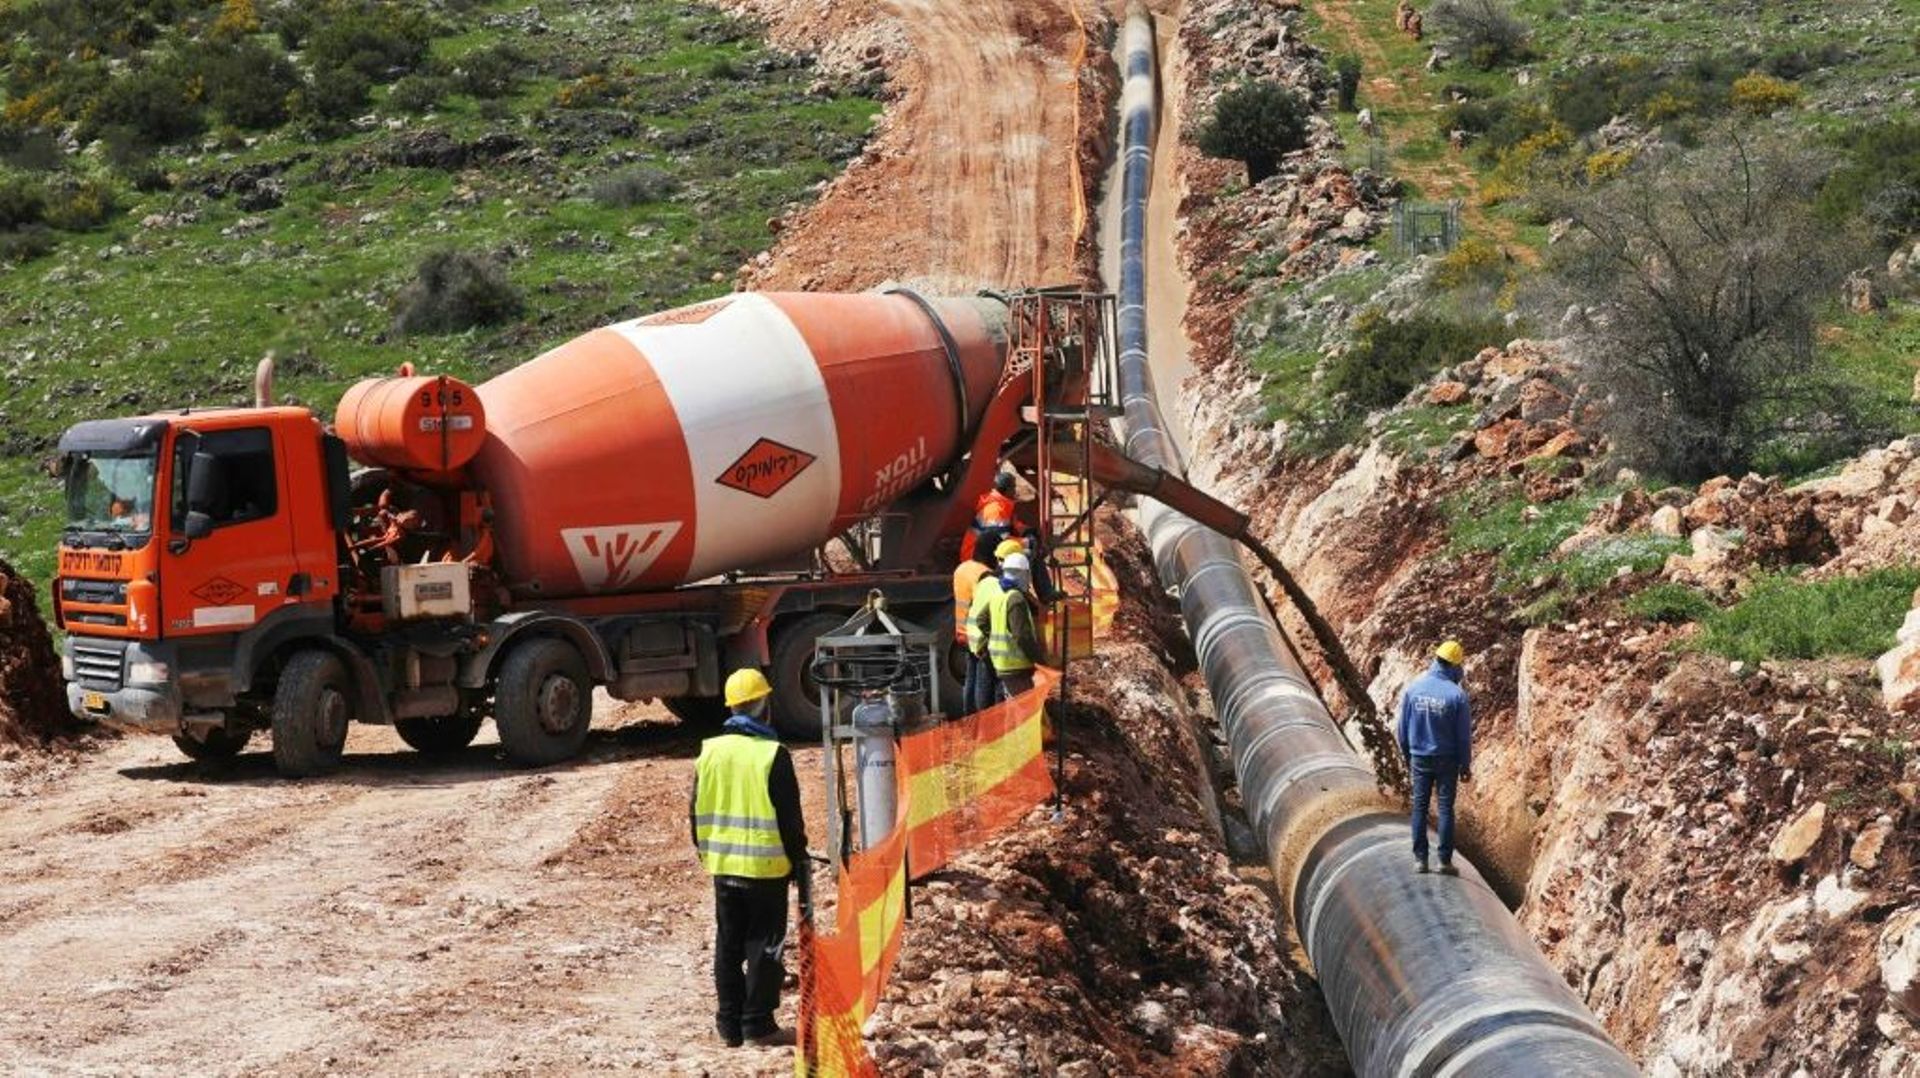 A travers des collines verdoyantes dans le nord d’Israël, des ouvriers creusent des tranchées pour y enfouir des kilomètres de canalisations qui feront le lien entre de gigantesques usines de dessalinisation et le lac de Tibériade